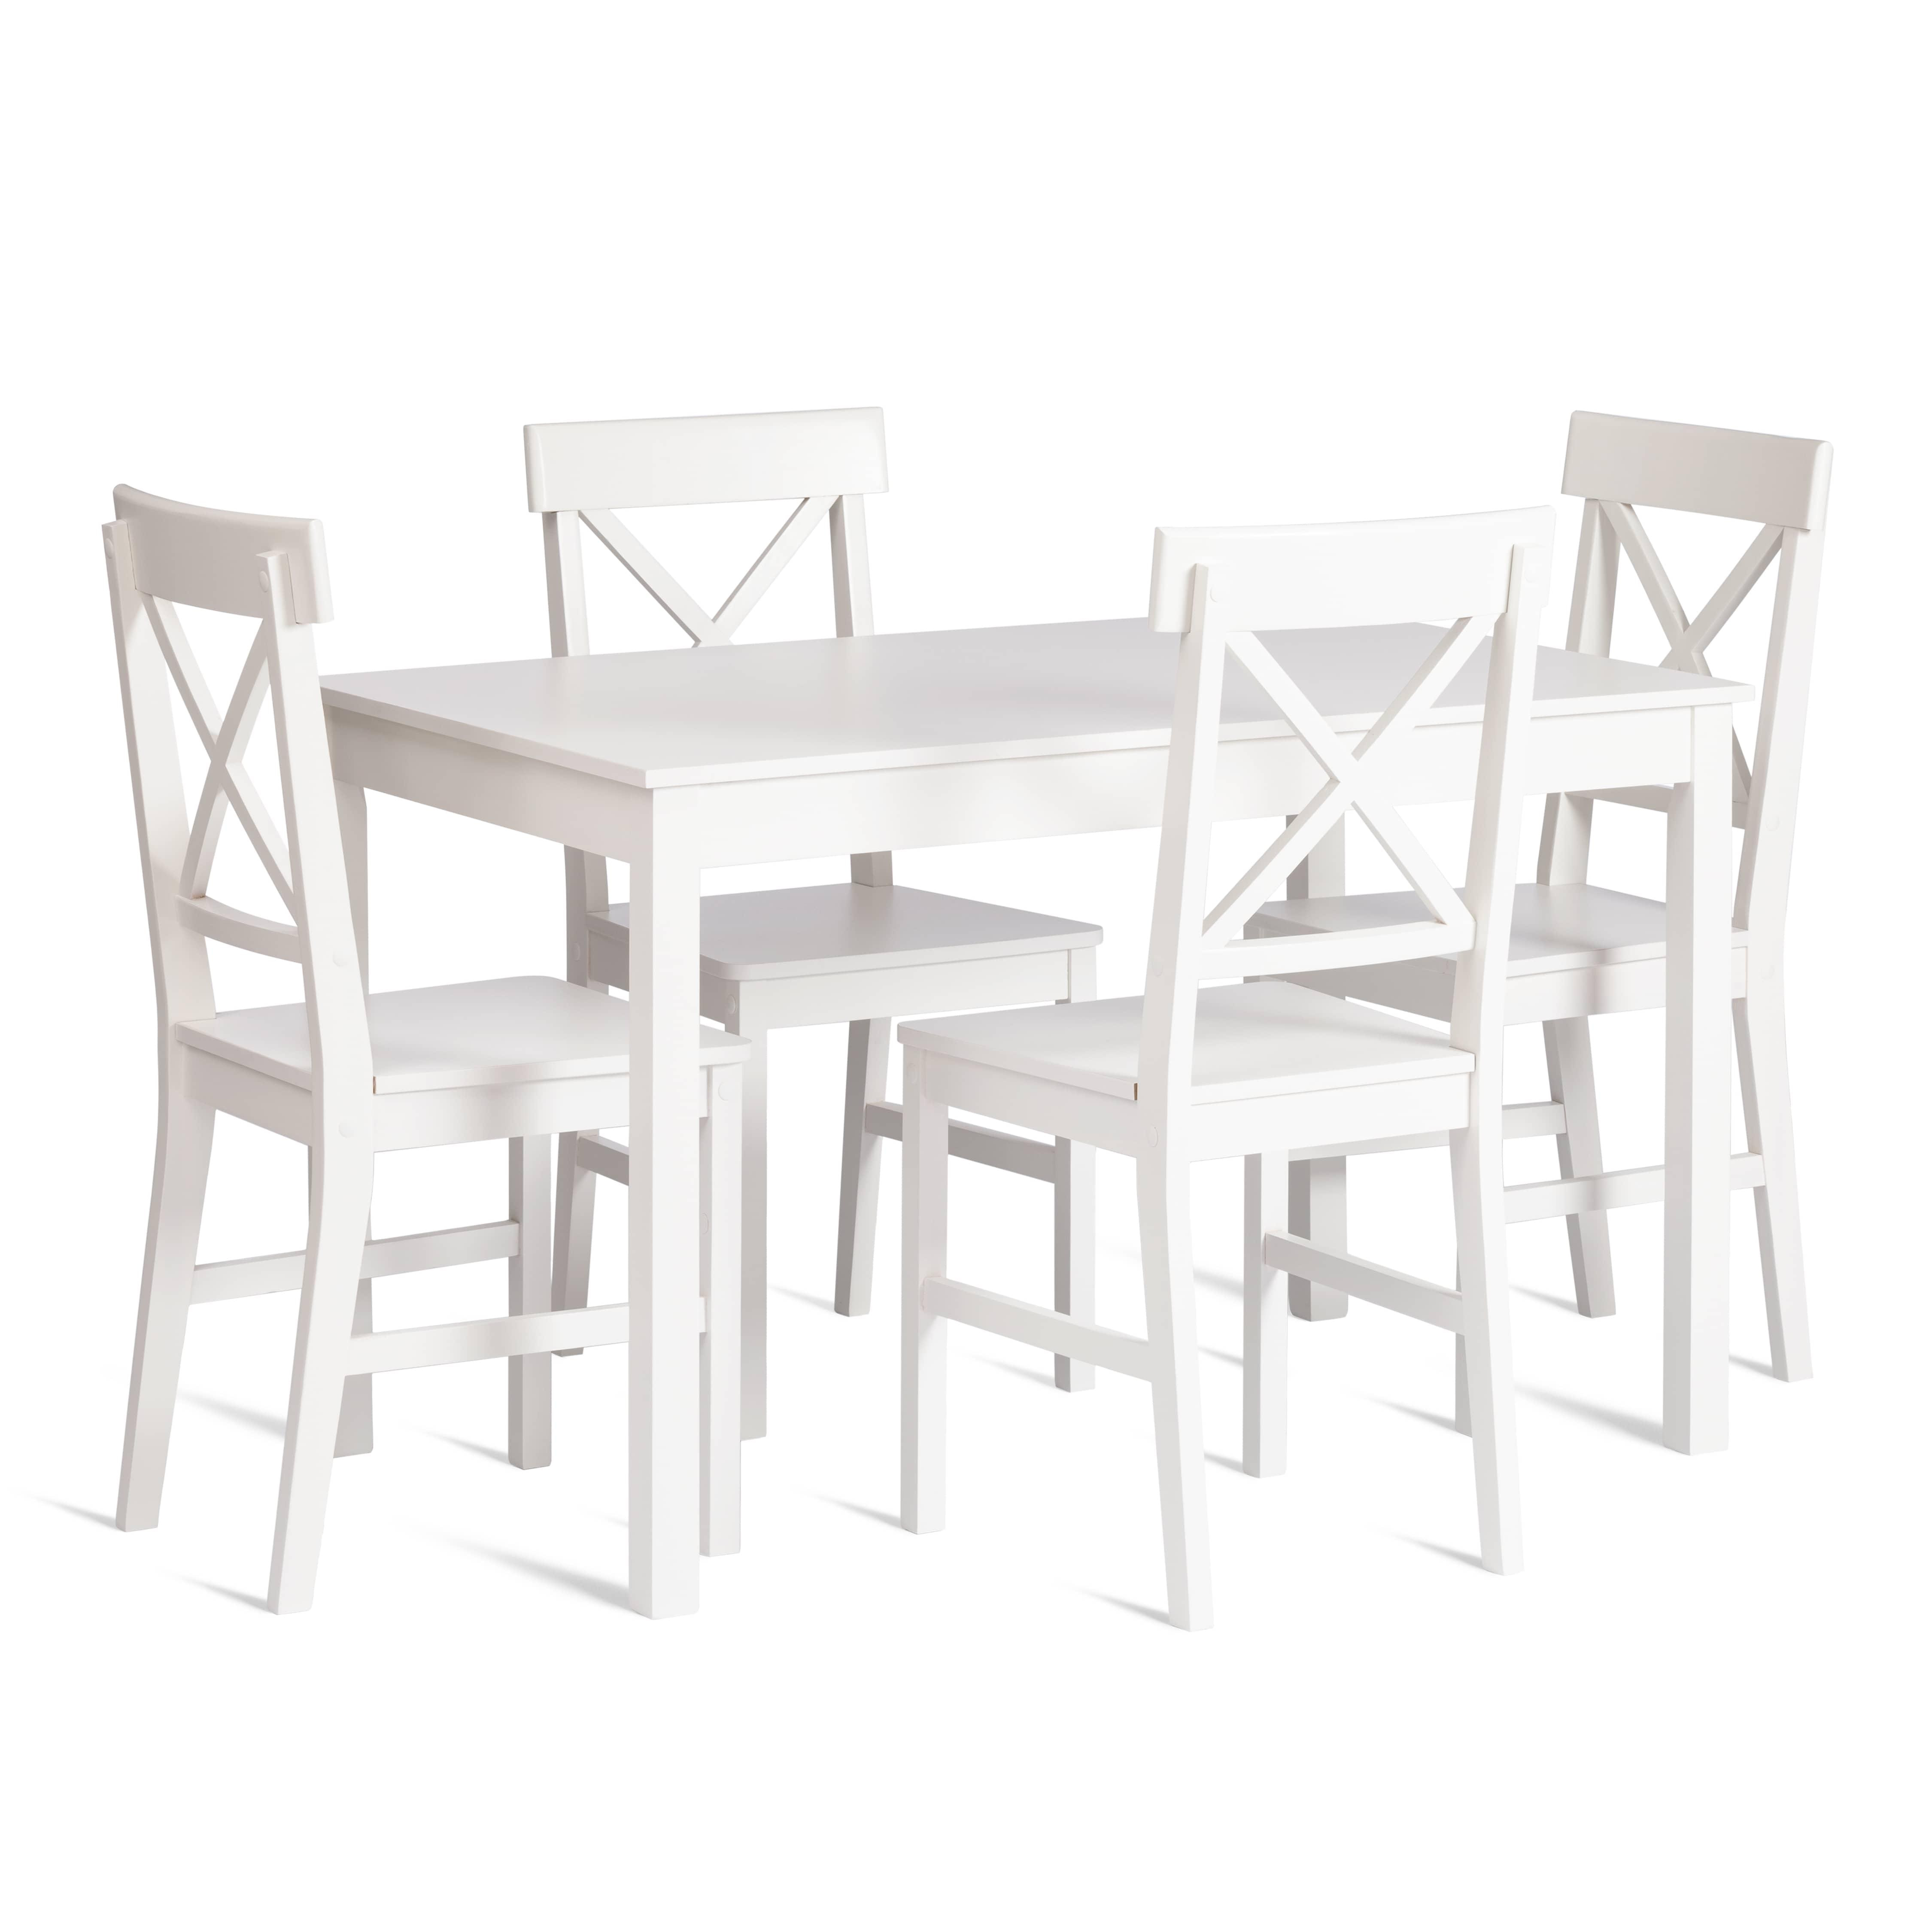 Обеденный комплект Хадсон (стол + 4 стула)/ Hudson Dining Set (mod.0102)